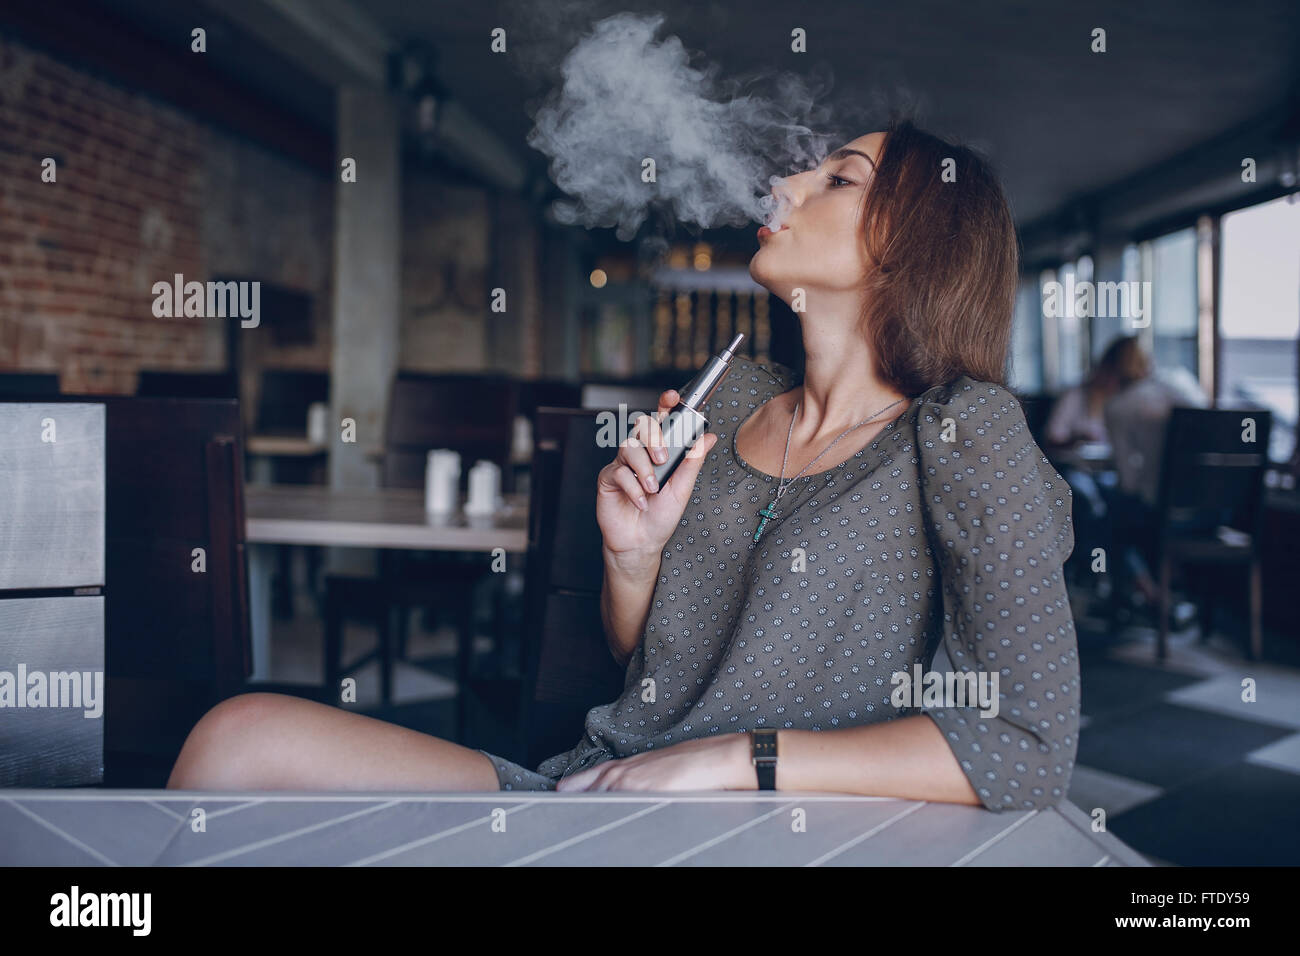 Girl with E-cigarette Stock Photo